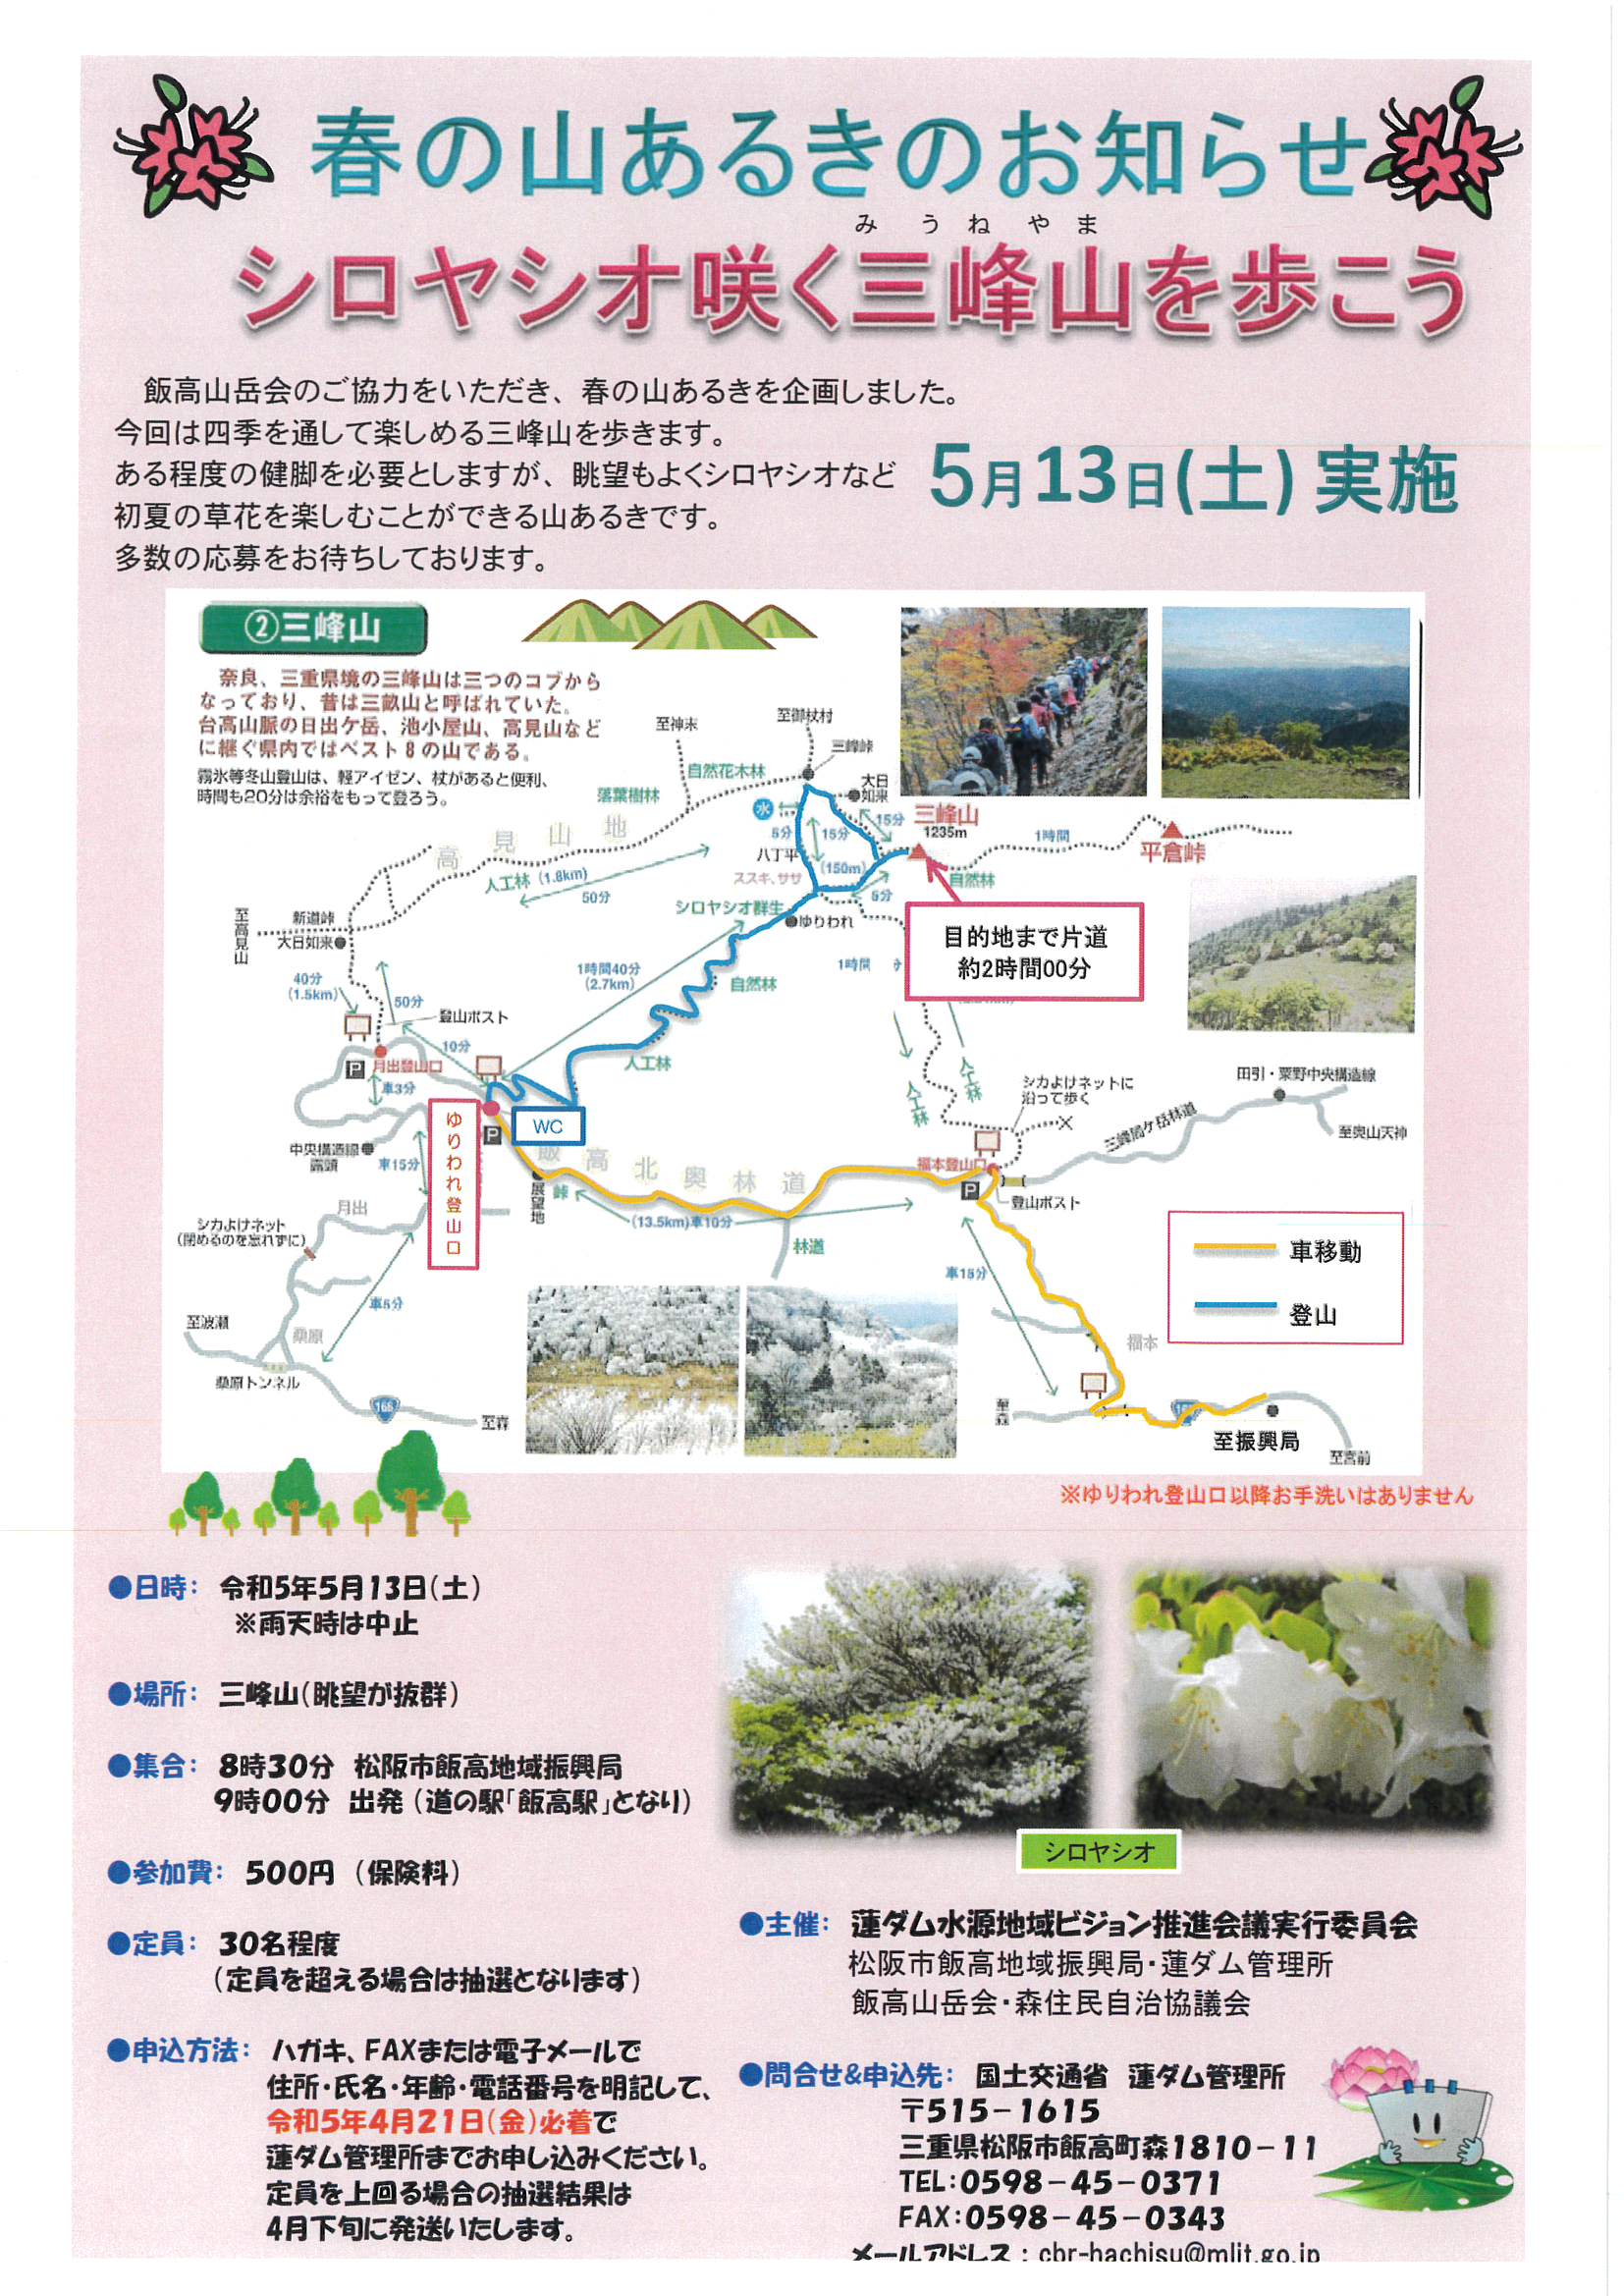 【参加募集のお知らせ】春の山あるき シロヤシオ咲く三峰山を歩こう